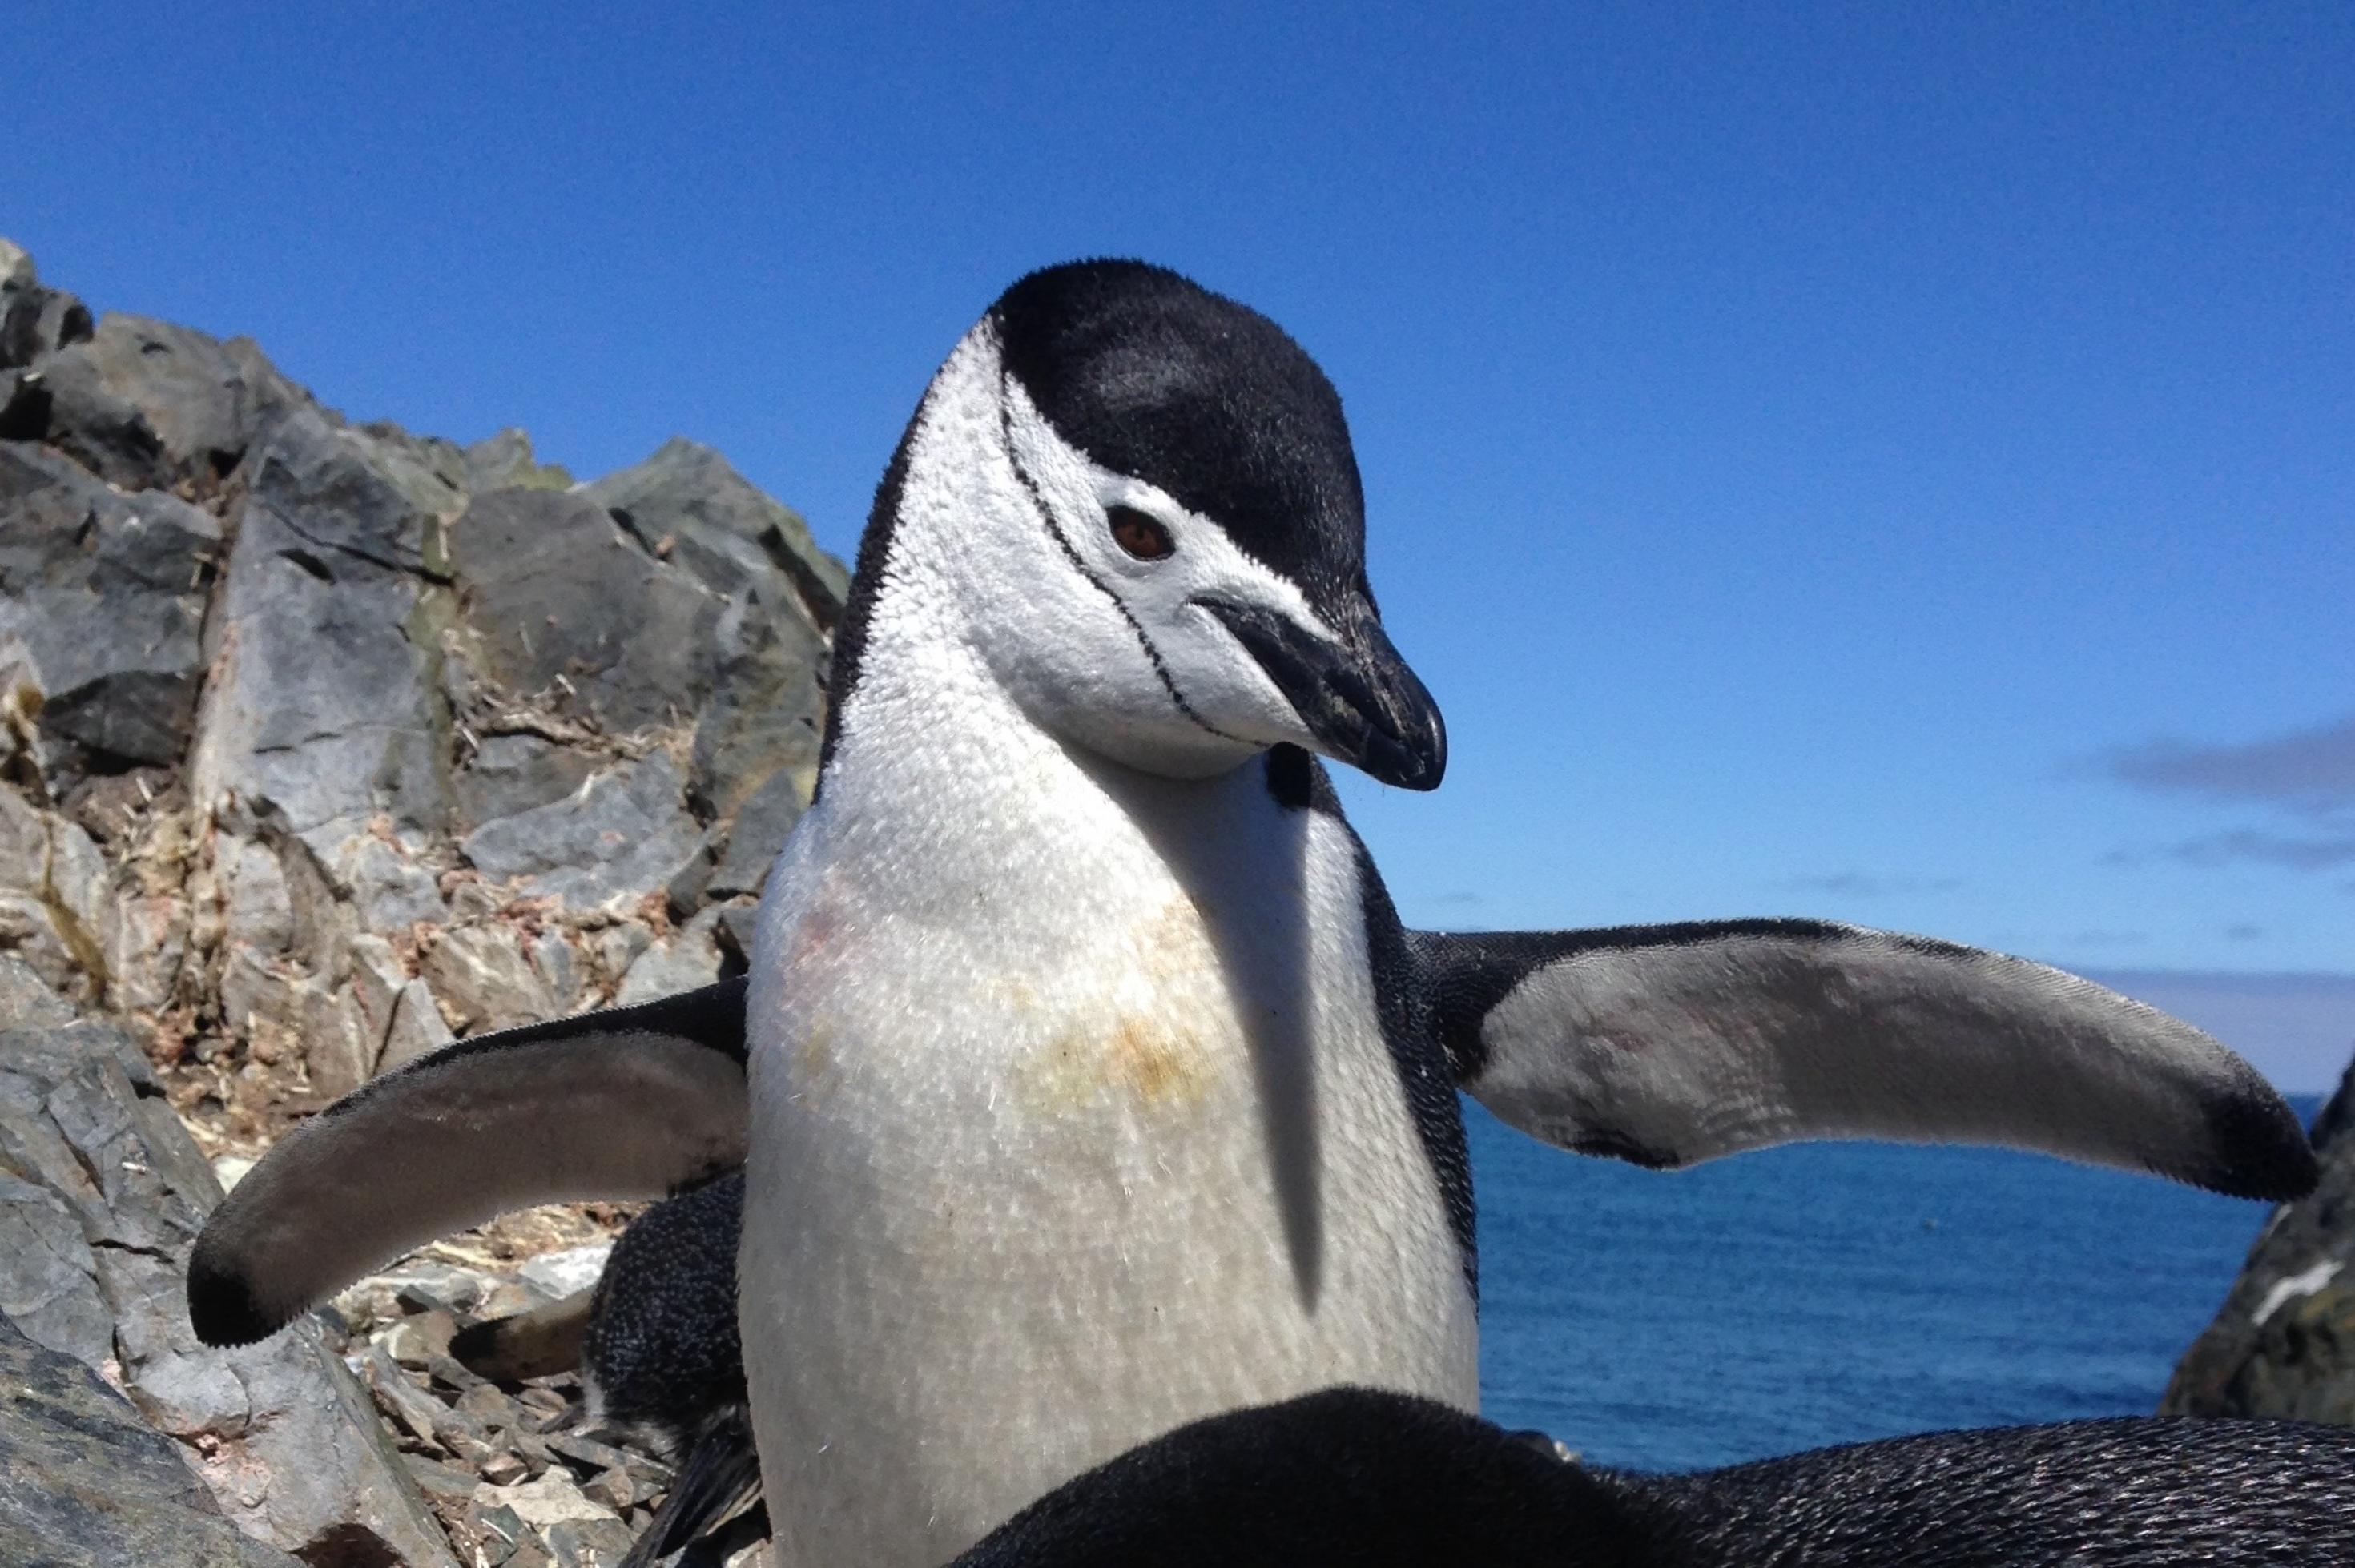 Ein schwarz-weißer Pinguin breitet seine flossenartigen kurzen Flügel aus. Hinter ihm der tiefblaue Himmel. Das schöne Tier hat einen schwarzen Schädel, eine schwarzen Schnabel und schwarze Augen.